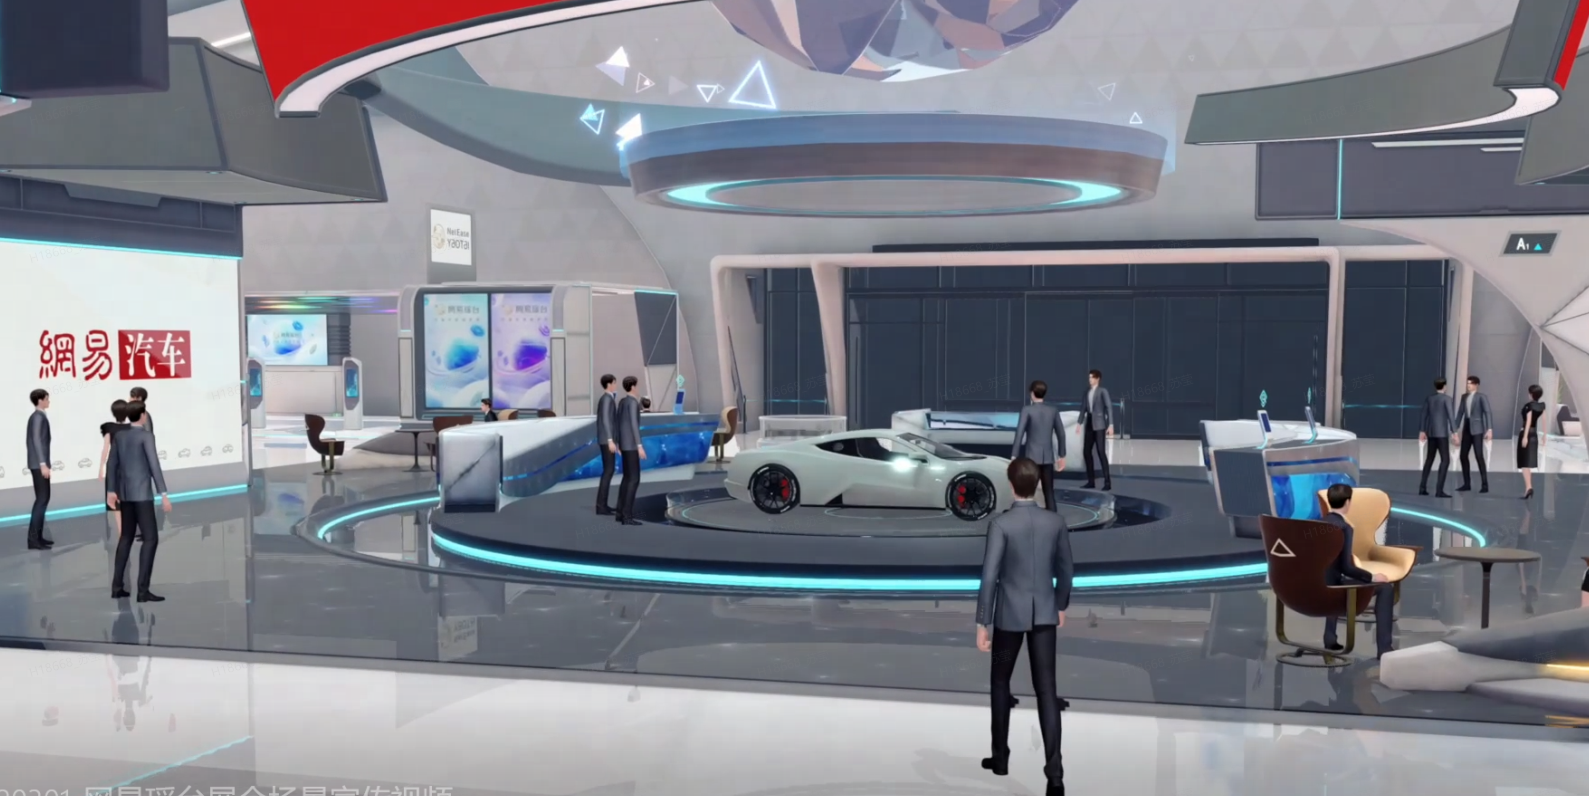 这是一张展示现代汽车展厅的图片，里面有多个人物，展示了一辆白色的概念车和高科技的展示界面。